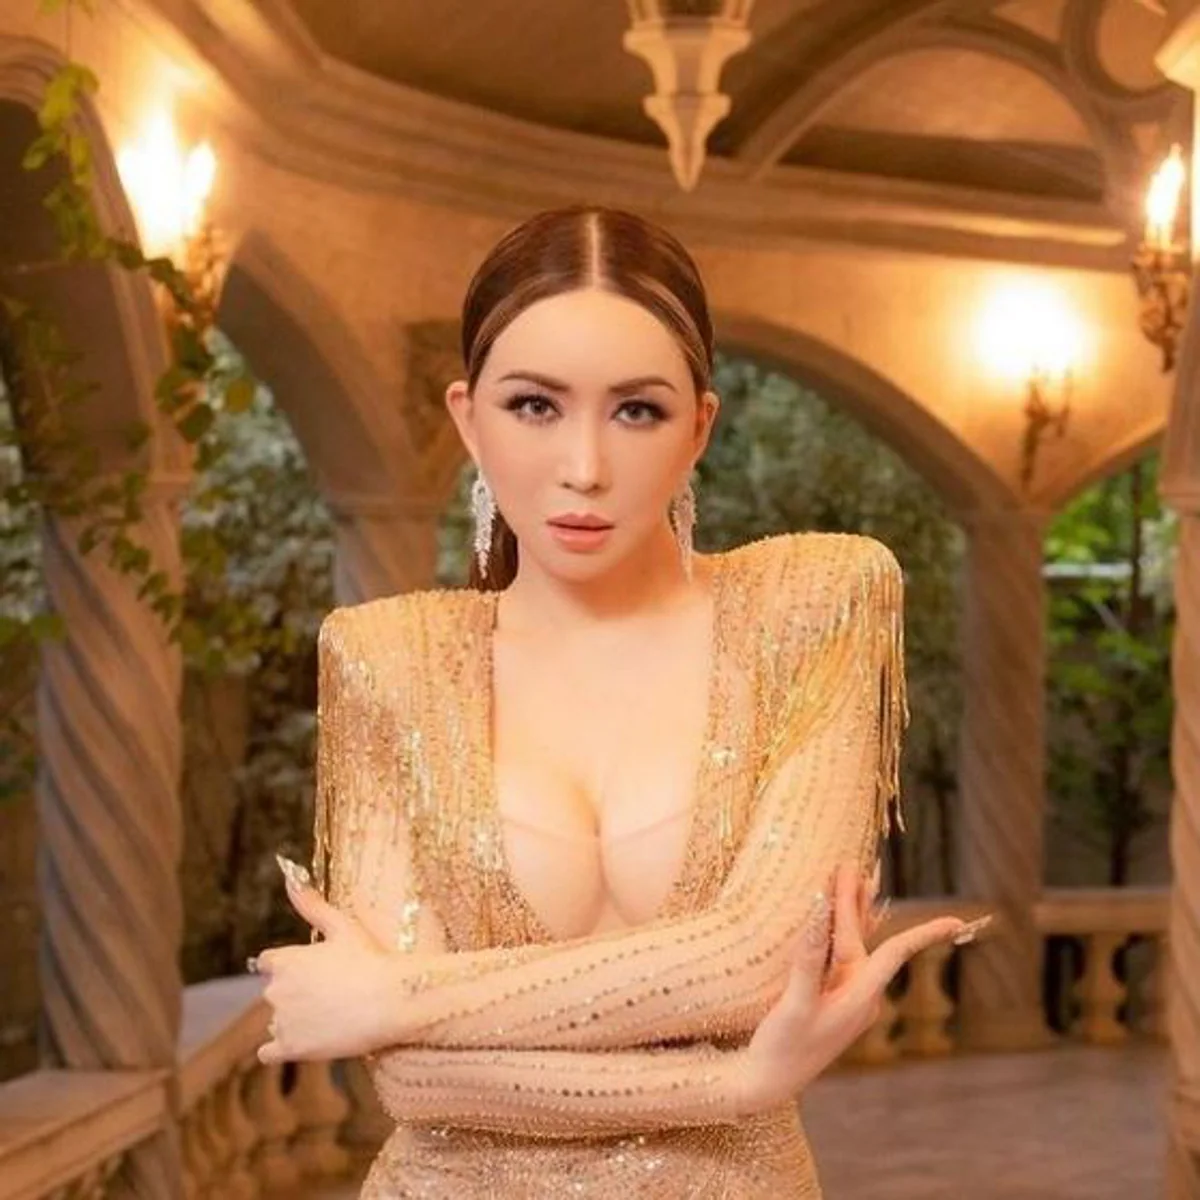 Una millonaria transgénero compra el concurso de belleza Miss Universo